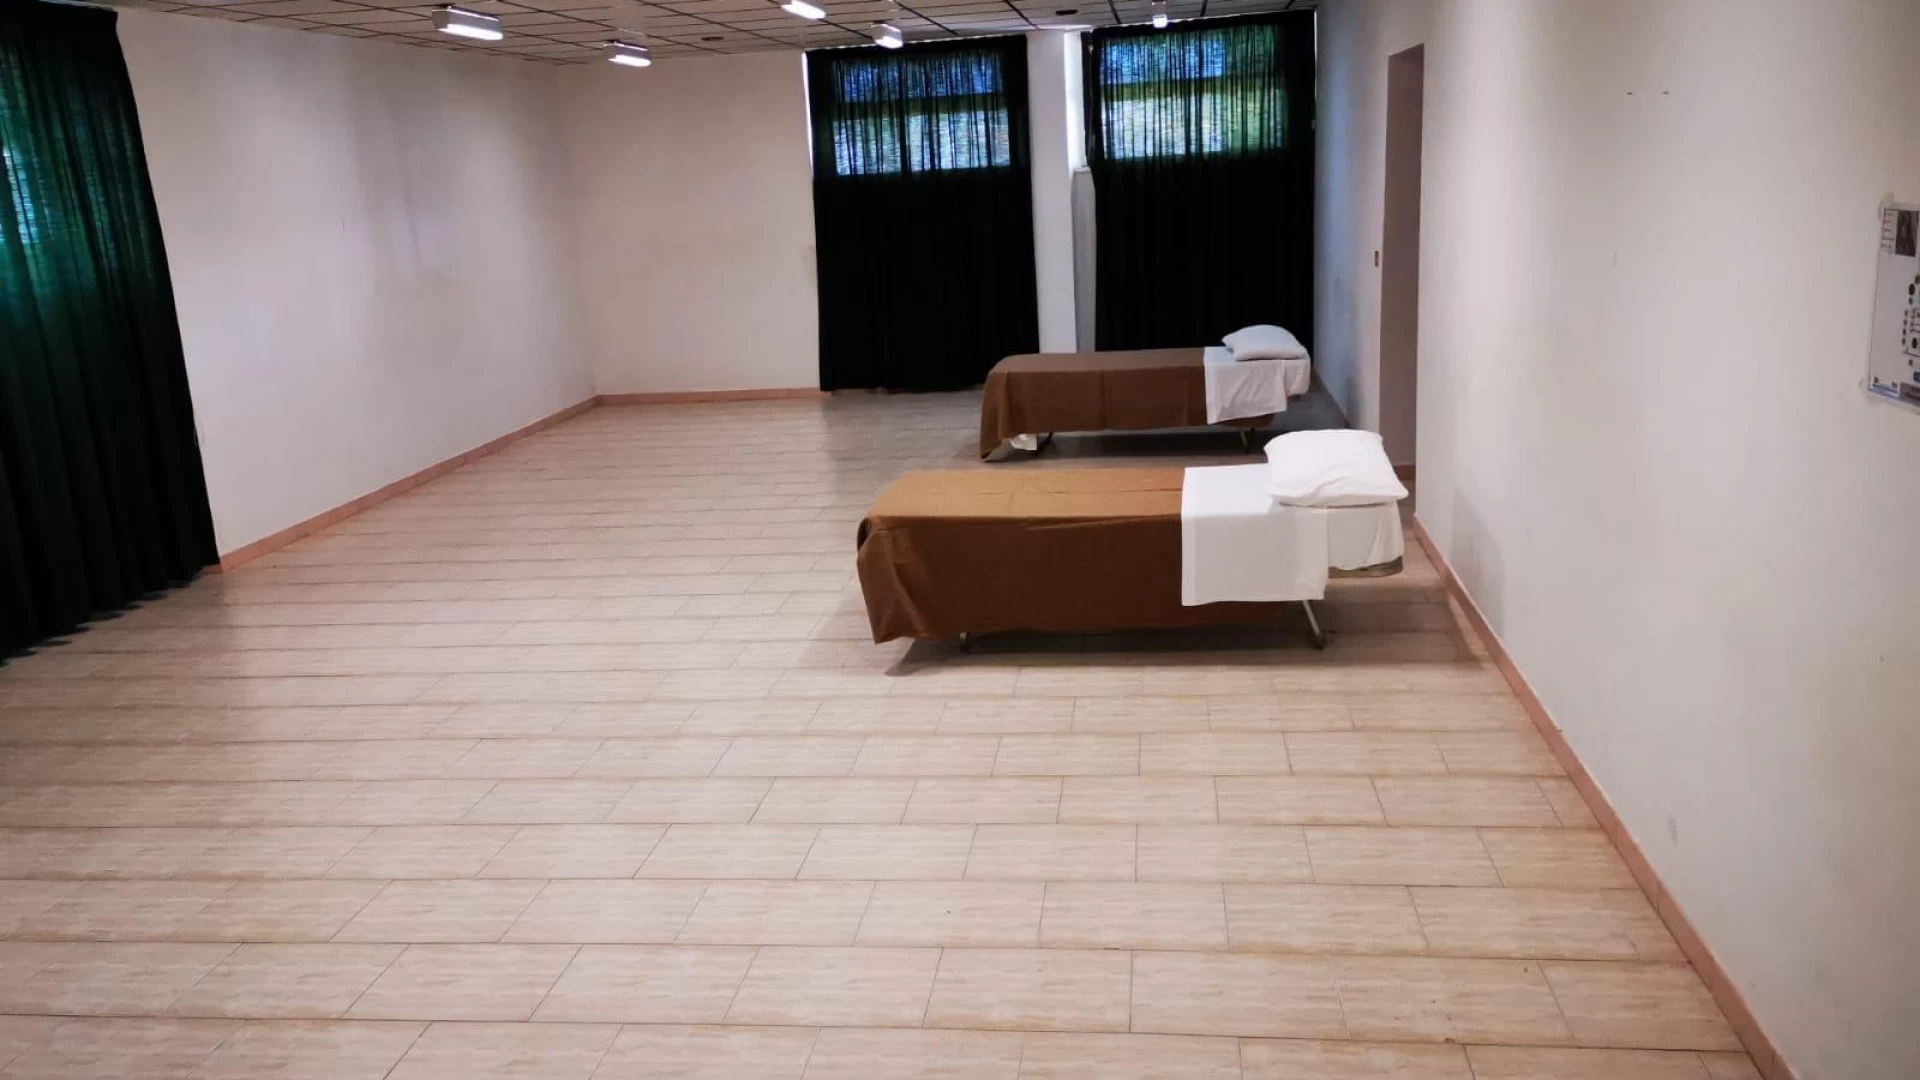 Termoli: allestito dormitorio femminile alla scuola Schwitzer